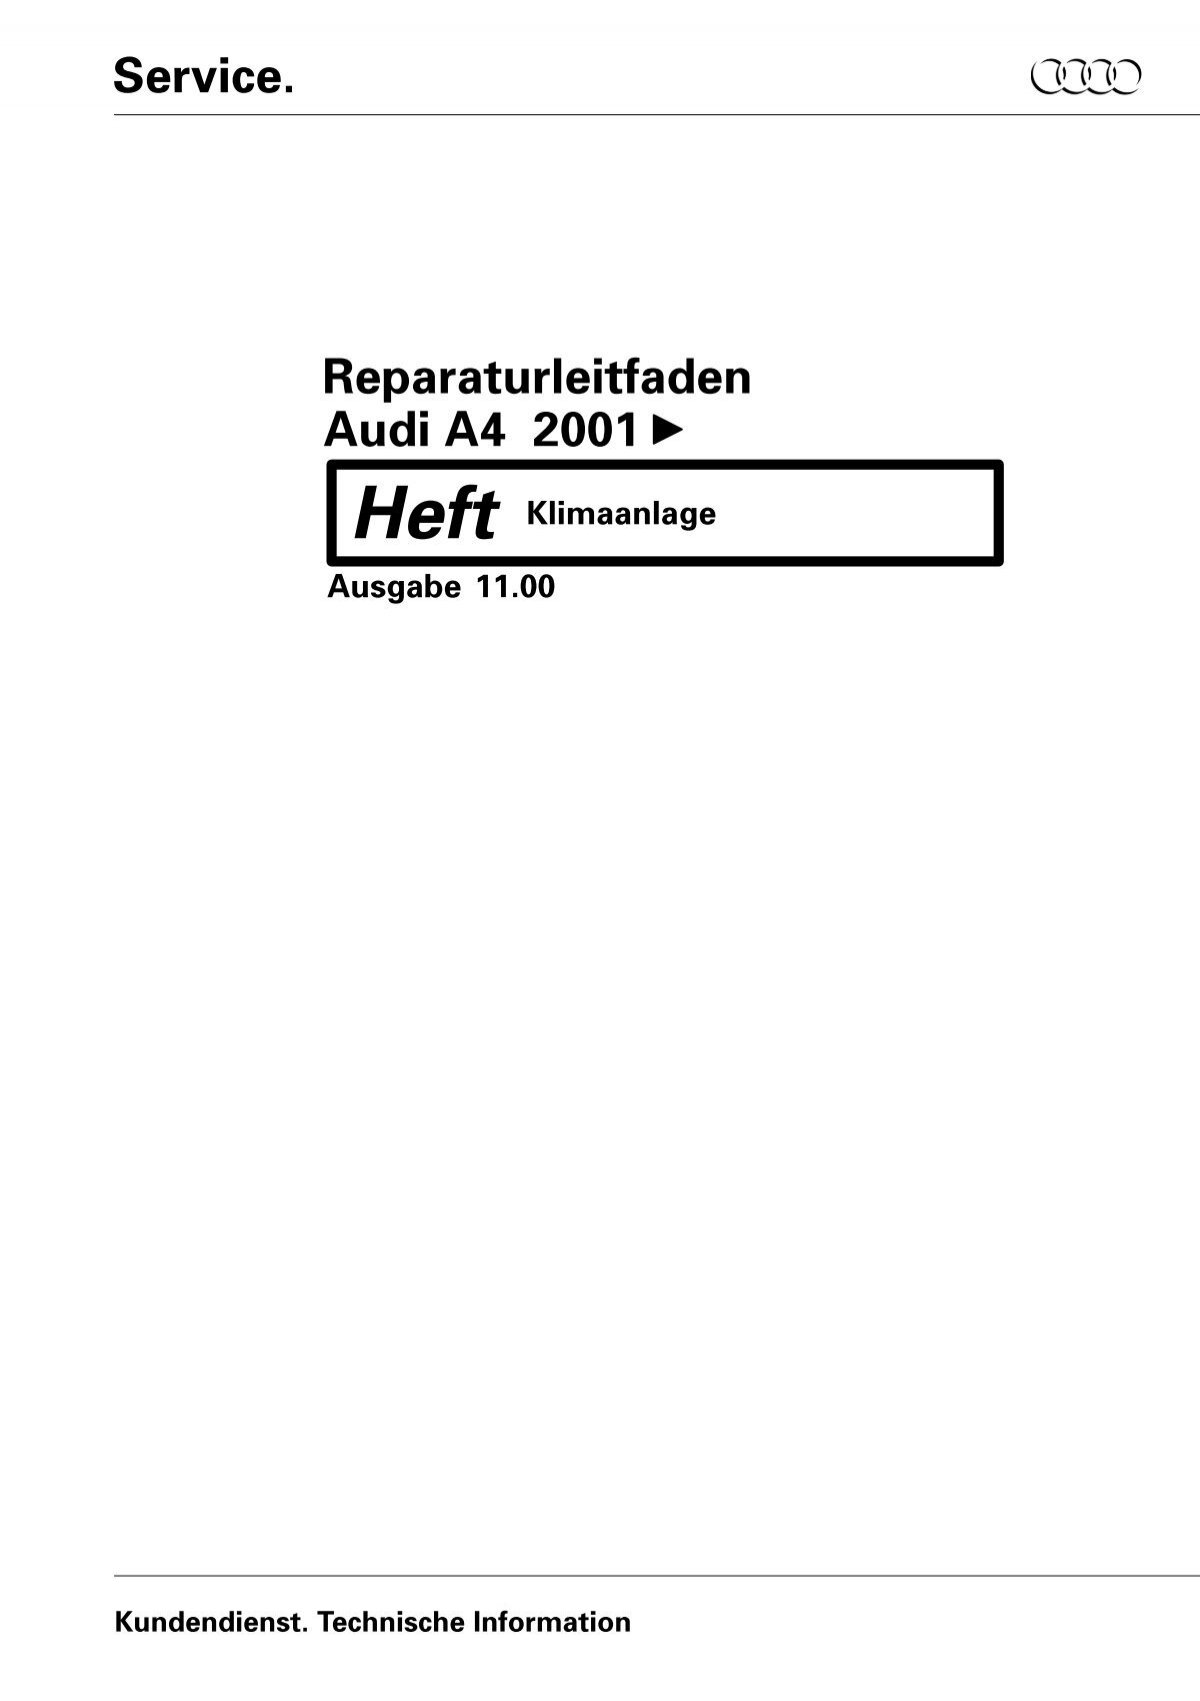 Service. Reparaturleitfaden Audi A4 2001